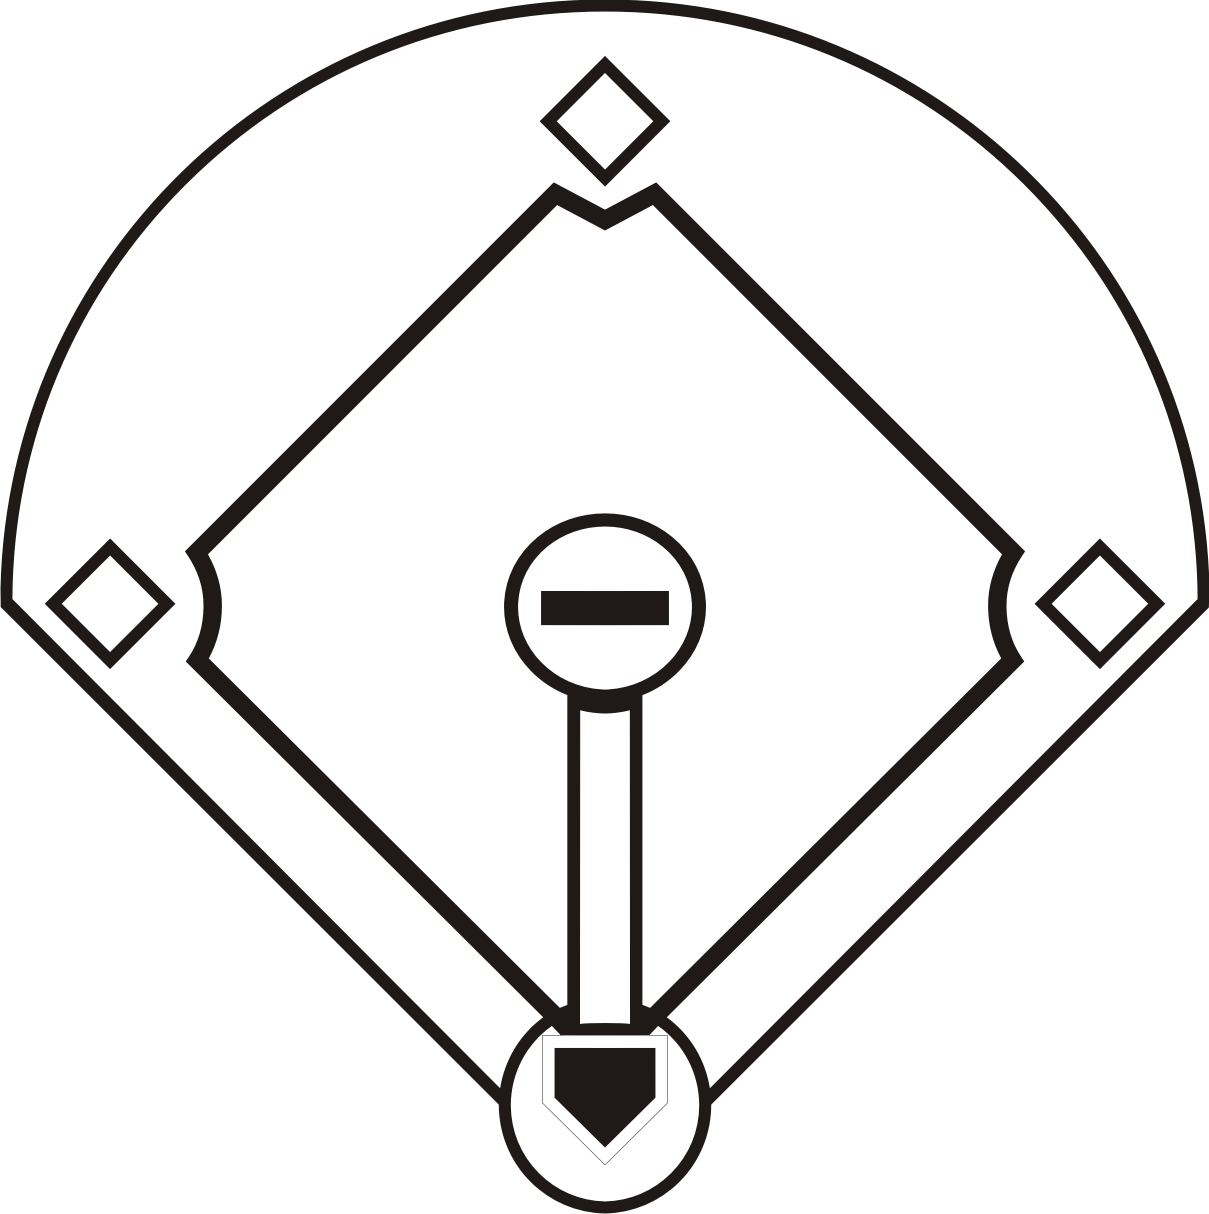 Printable Baseball Diamond Template